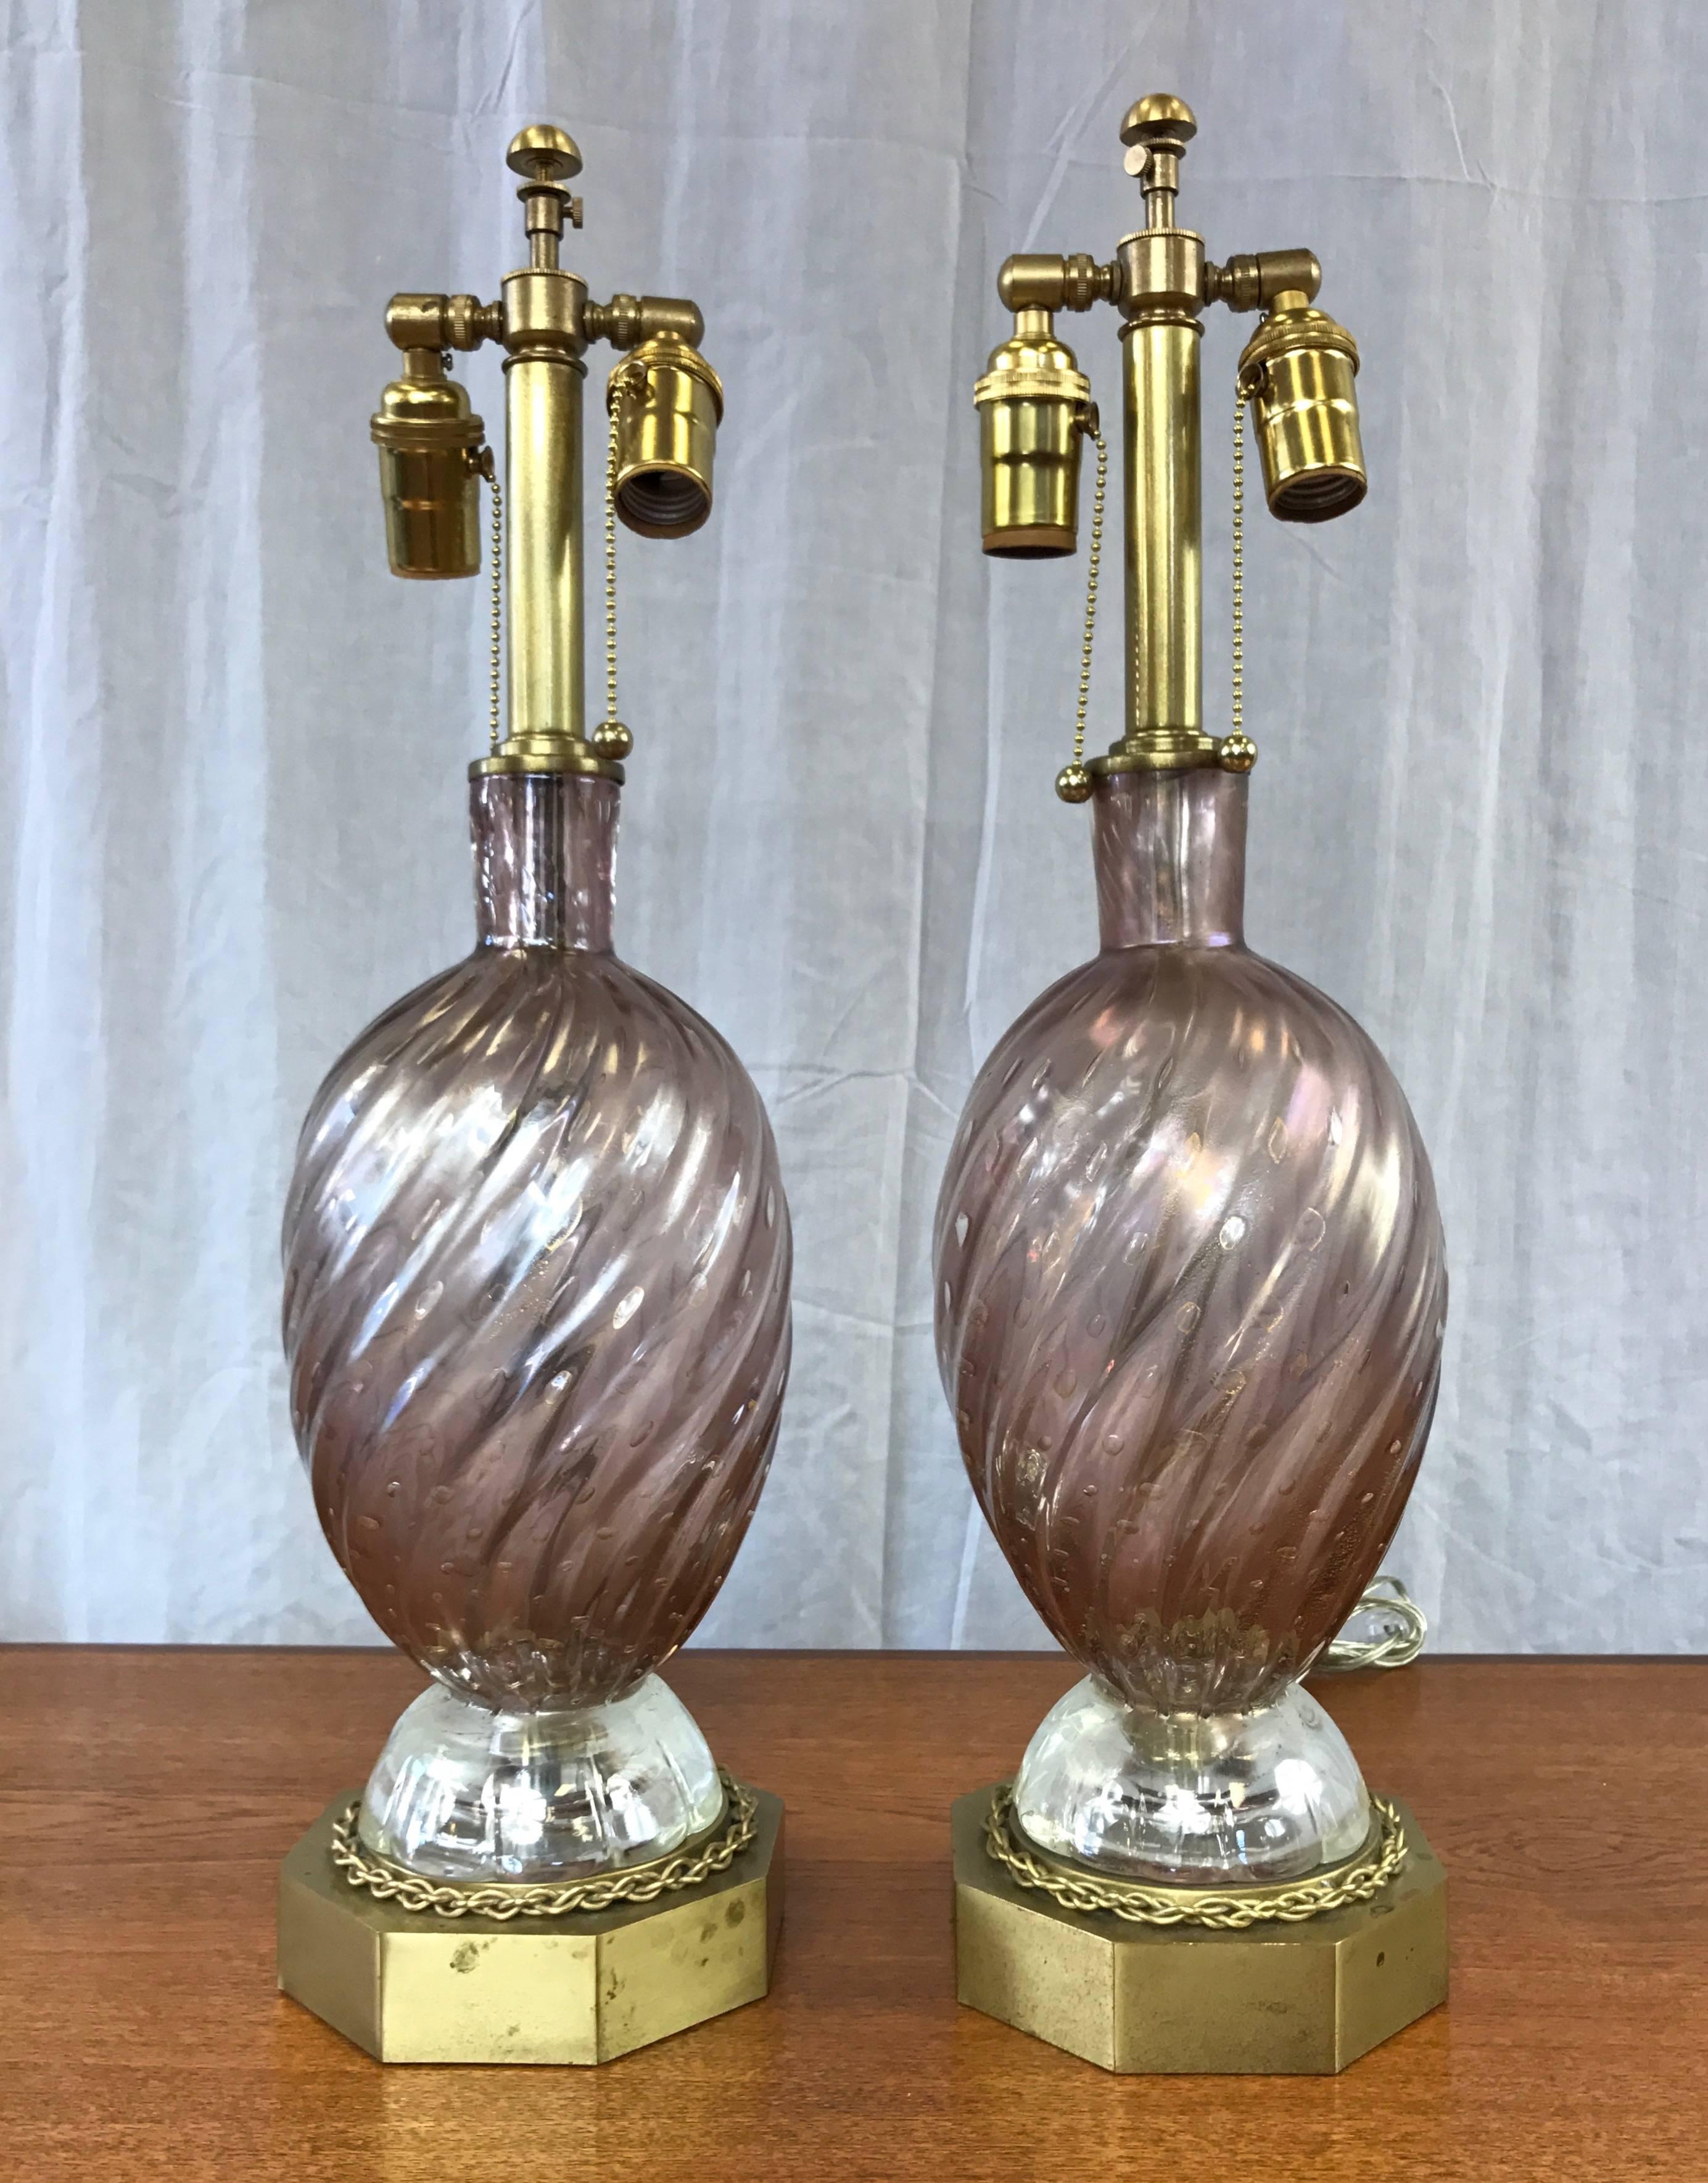 Ein bezauberndes Paar Vintage-Tischlampen aus Glas und Messing im venezianischen Stil der ehrwürdigen Murano-Glasmanufaktur Barovier e Toso.

Schöne mundgeblasene Bullicante Glas Körper ist blass Amethyst mit staubigen rosa Untertönen. Er wird